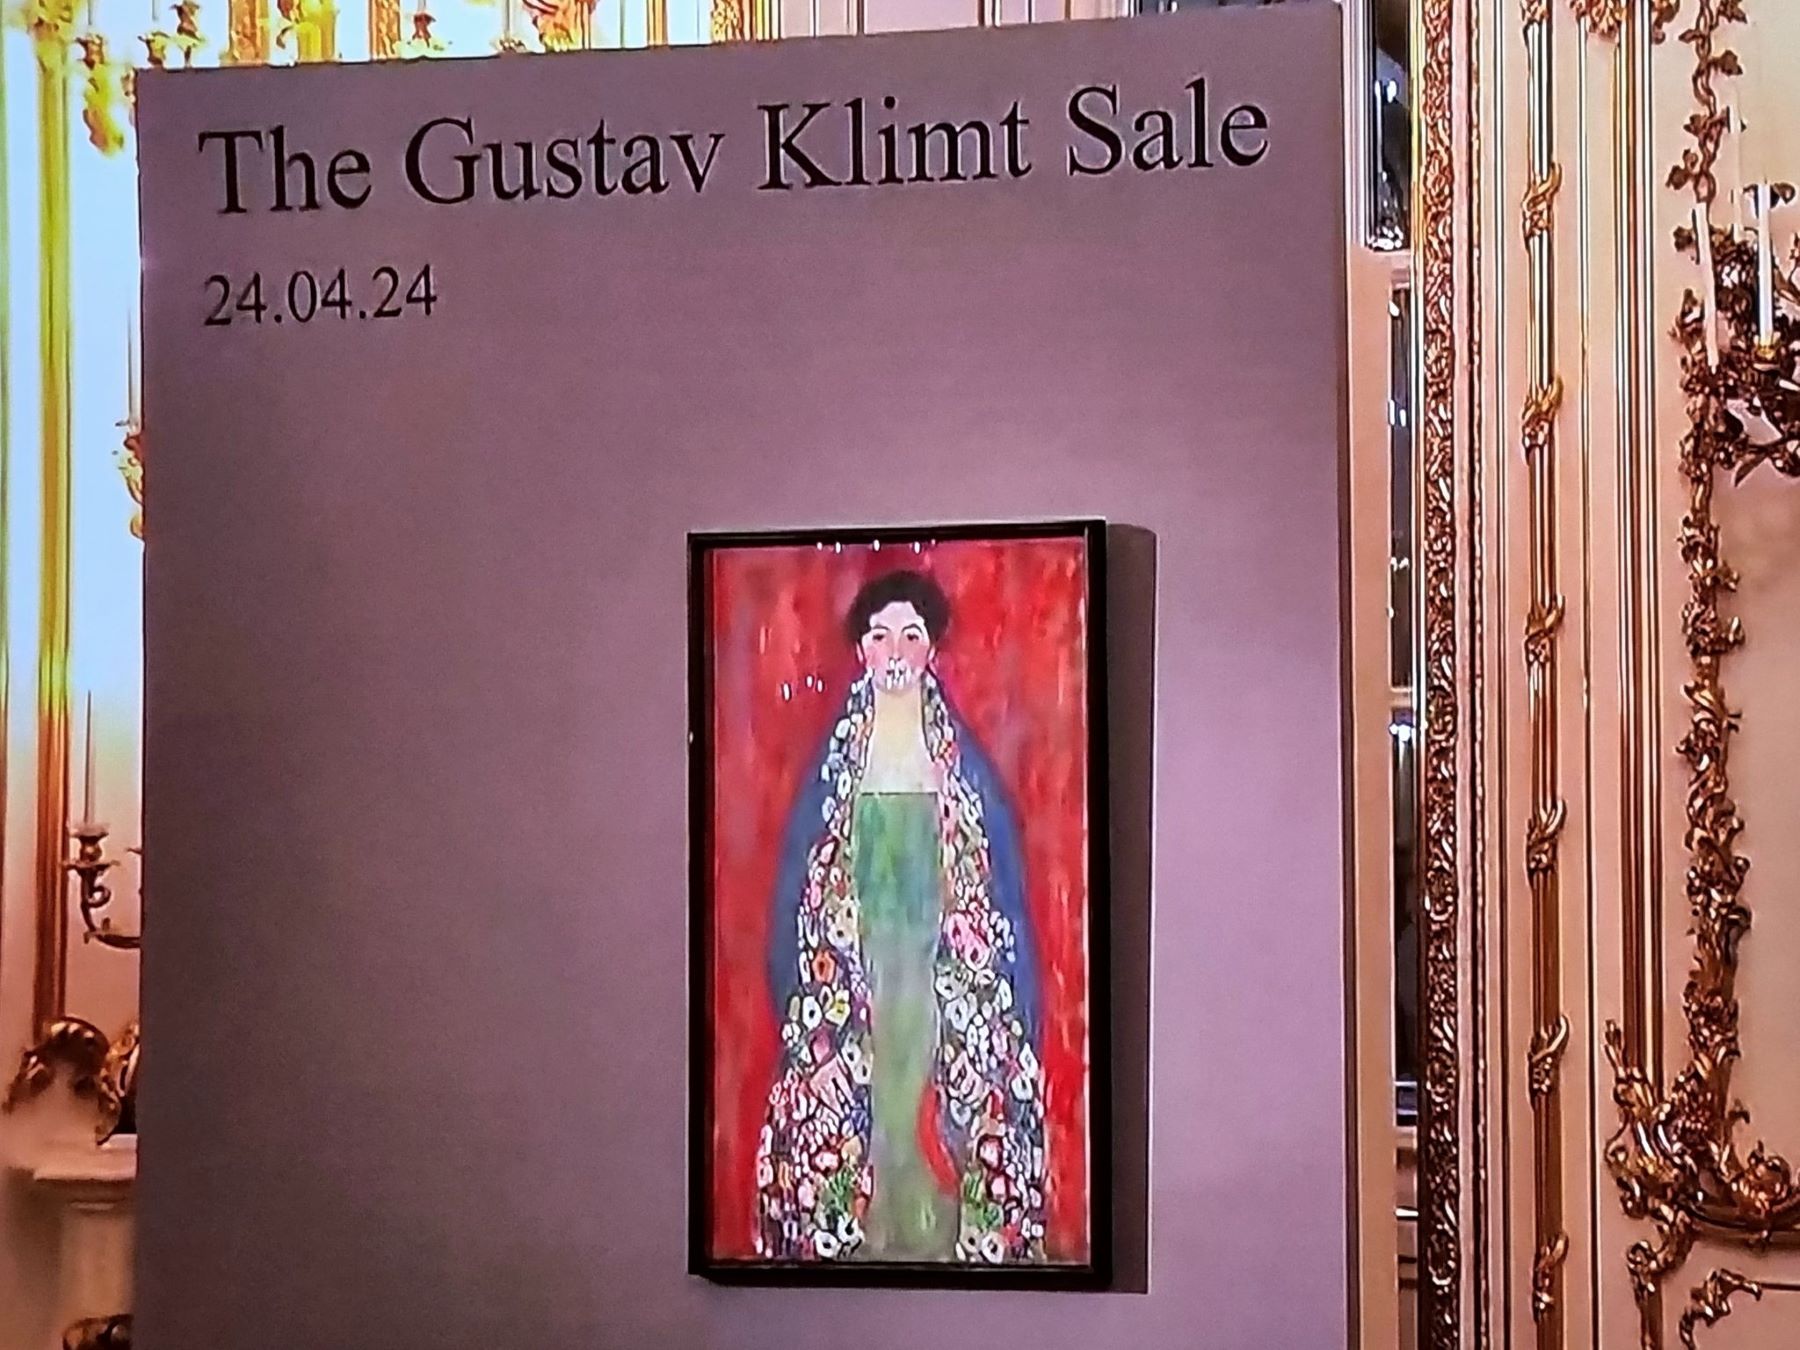 Γκούσταβ Κλιμτ – Μις Λίζερ: Σε δημοπρασία πουλήθηκε ο χαμένος πίνακας του ζωγράφου